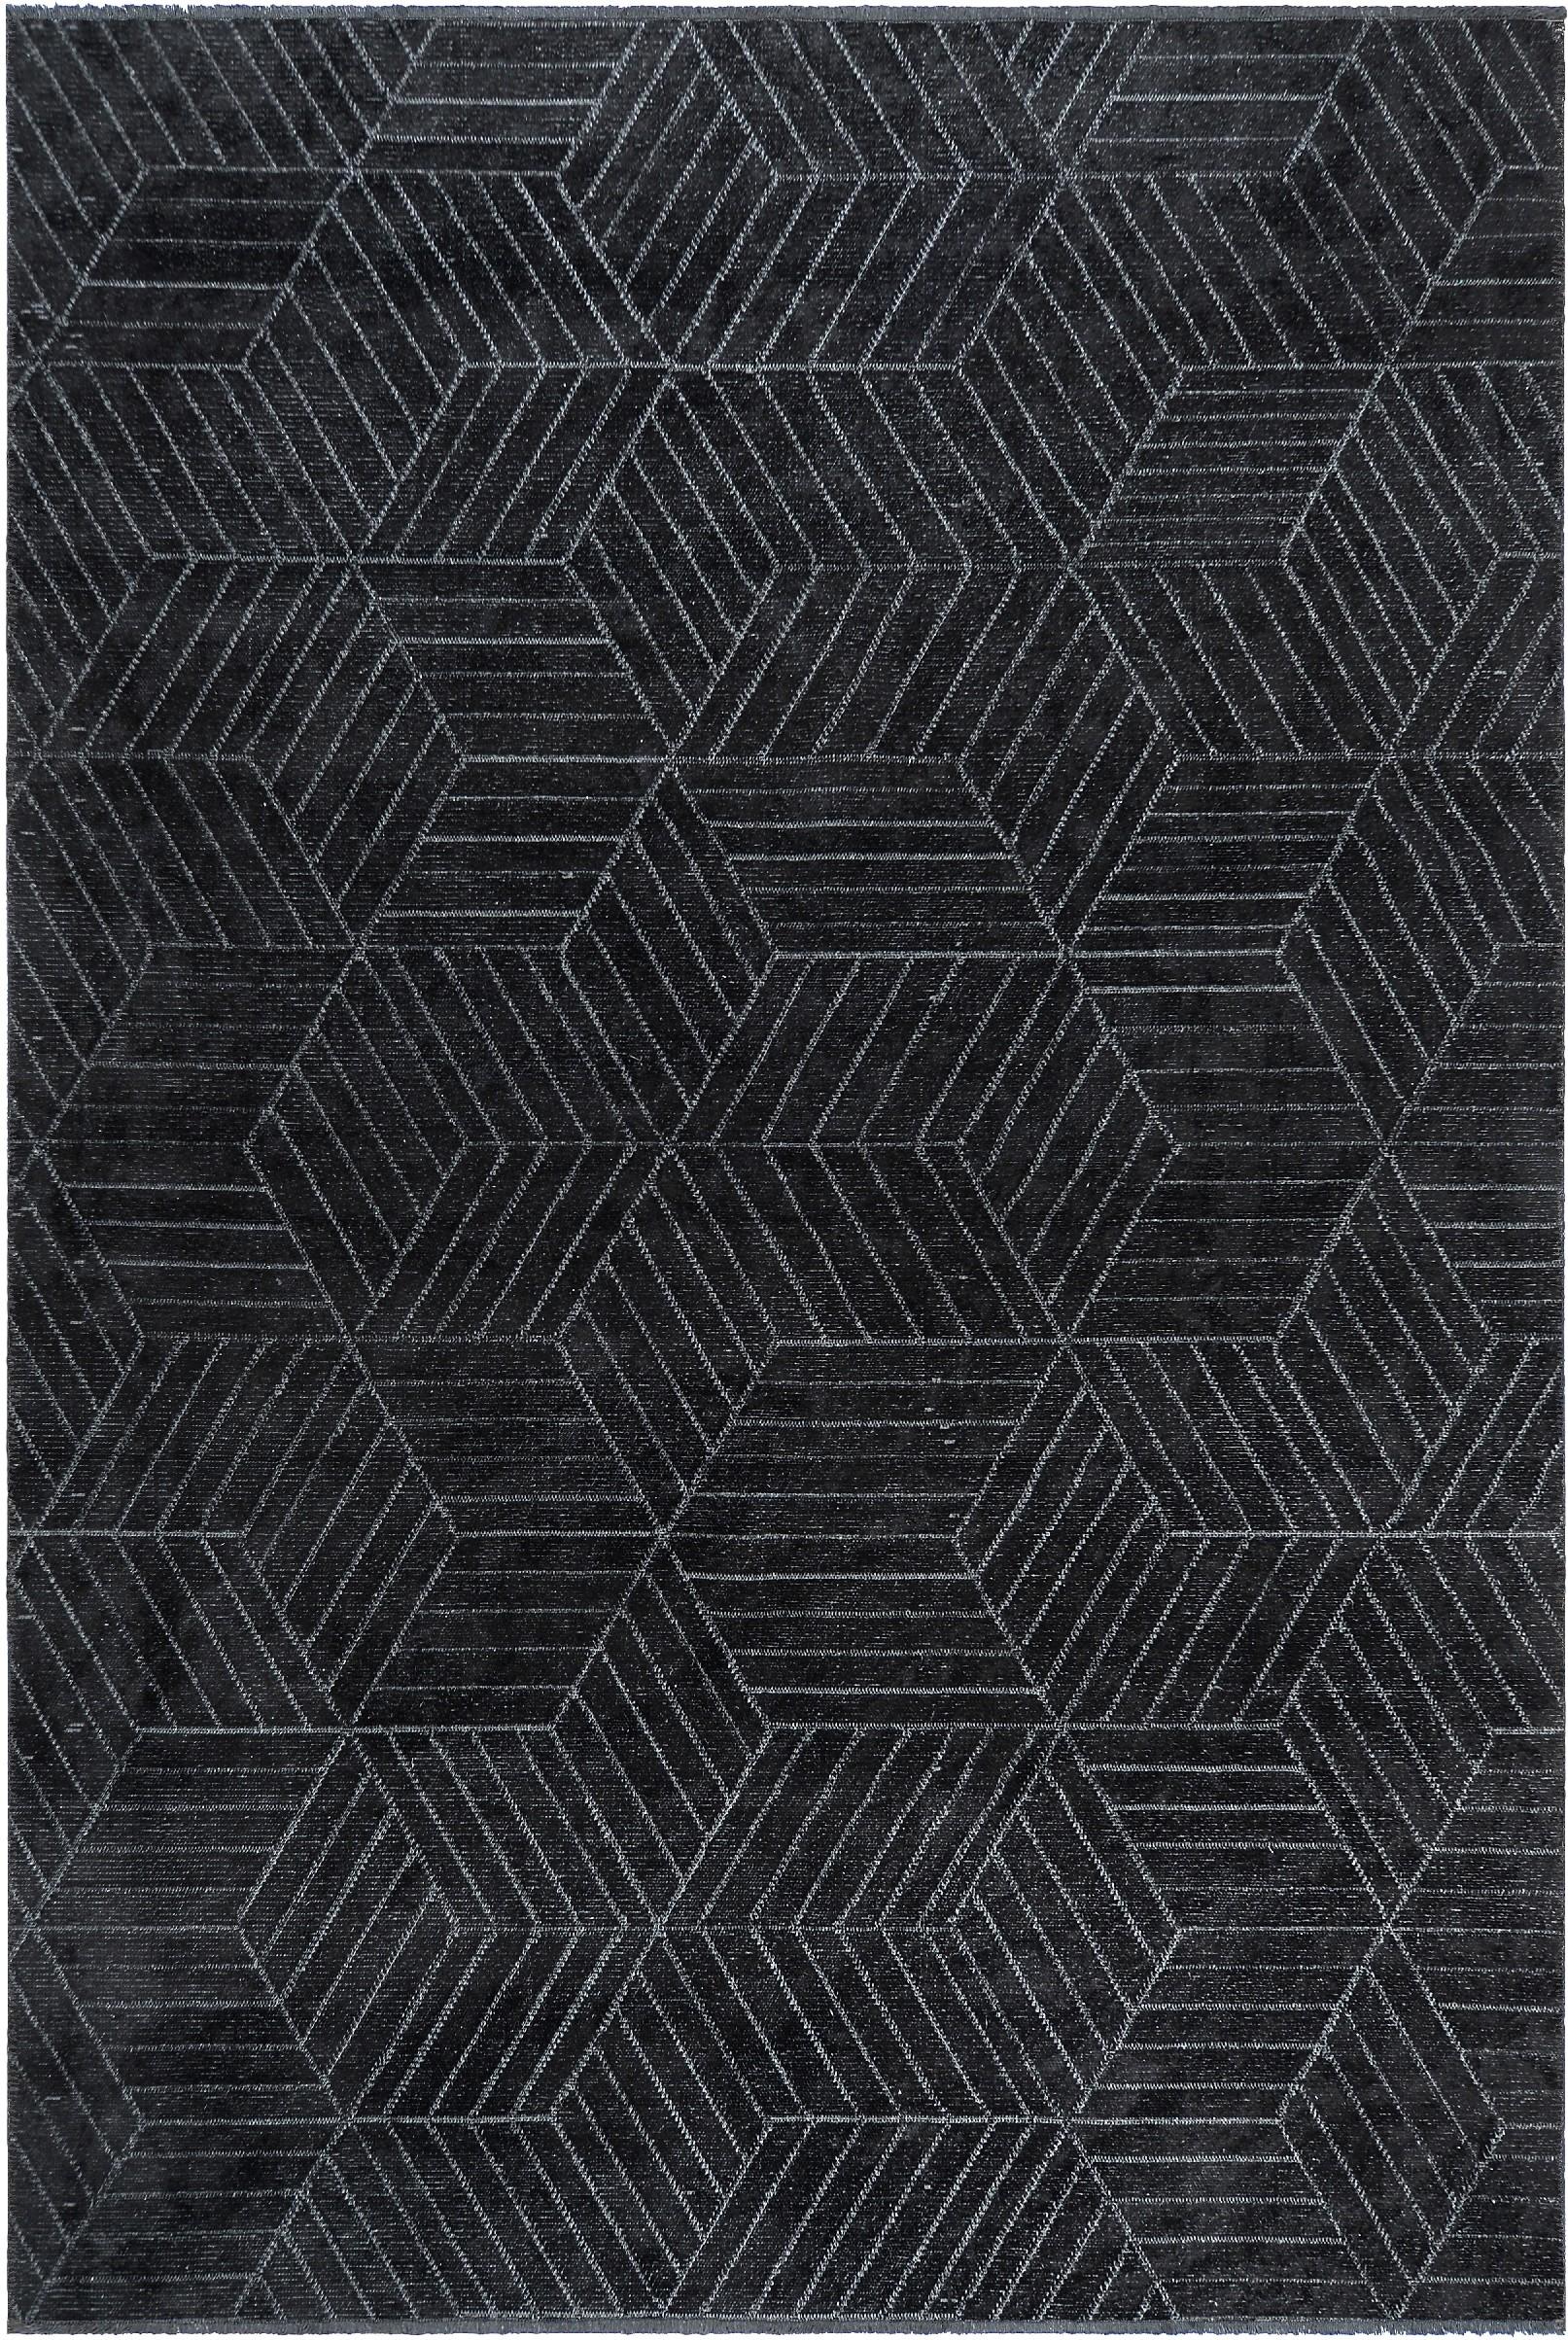 En vente :  (Noir) Tapis de sol contemporain géométrique de luxe